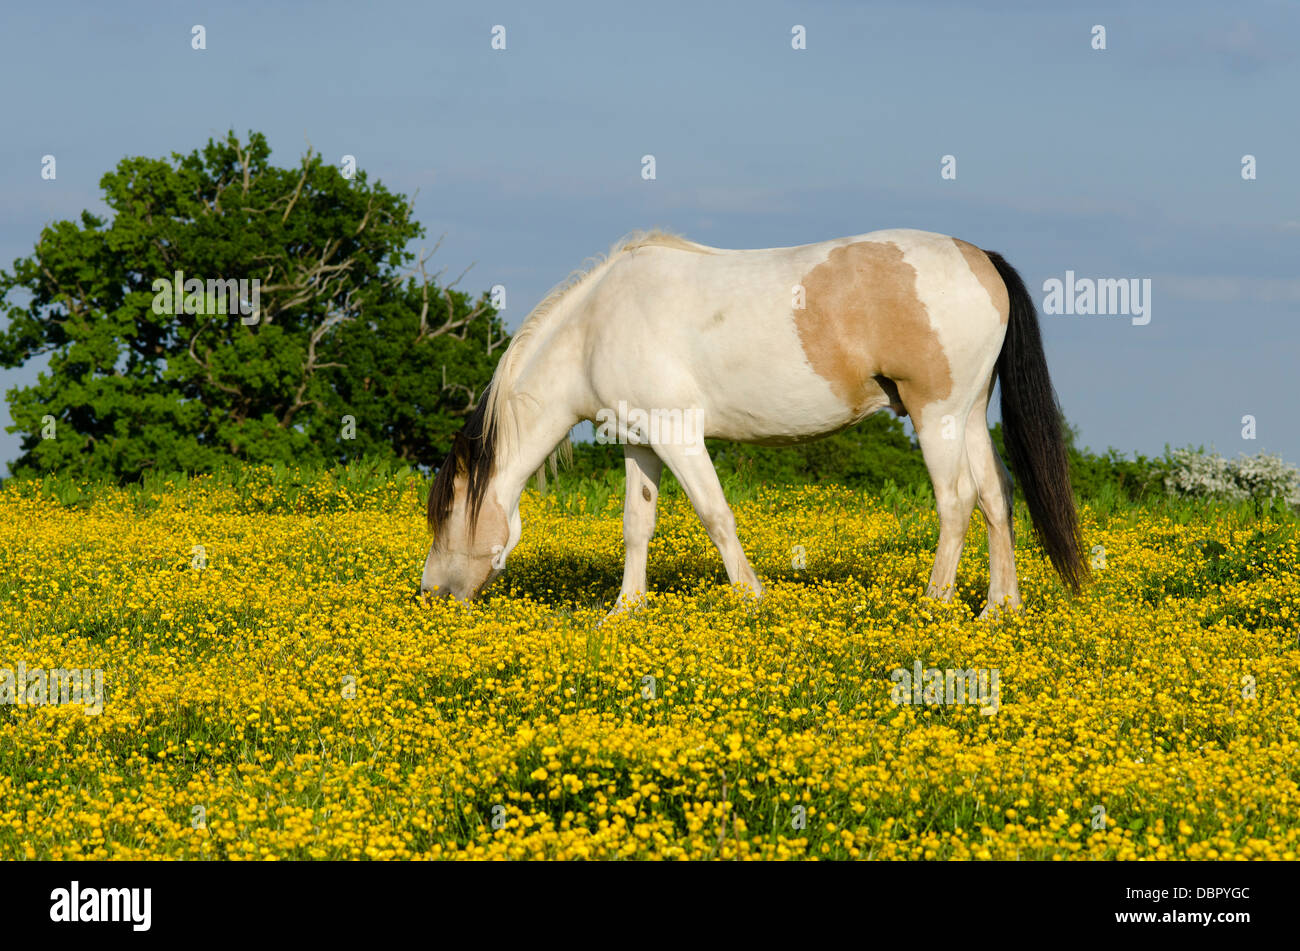 yellow dun horse